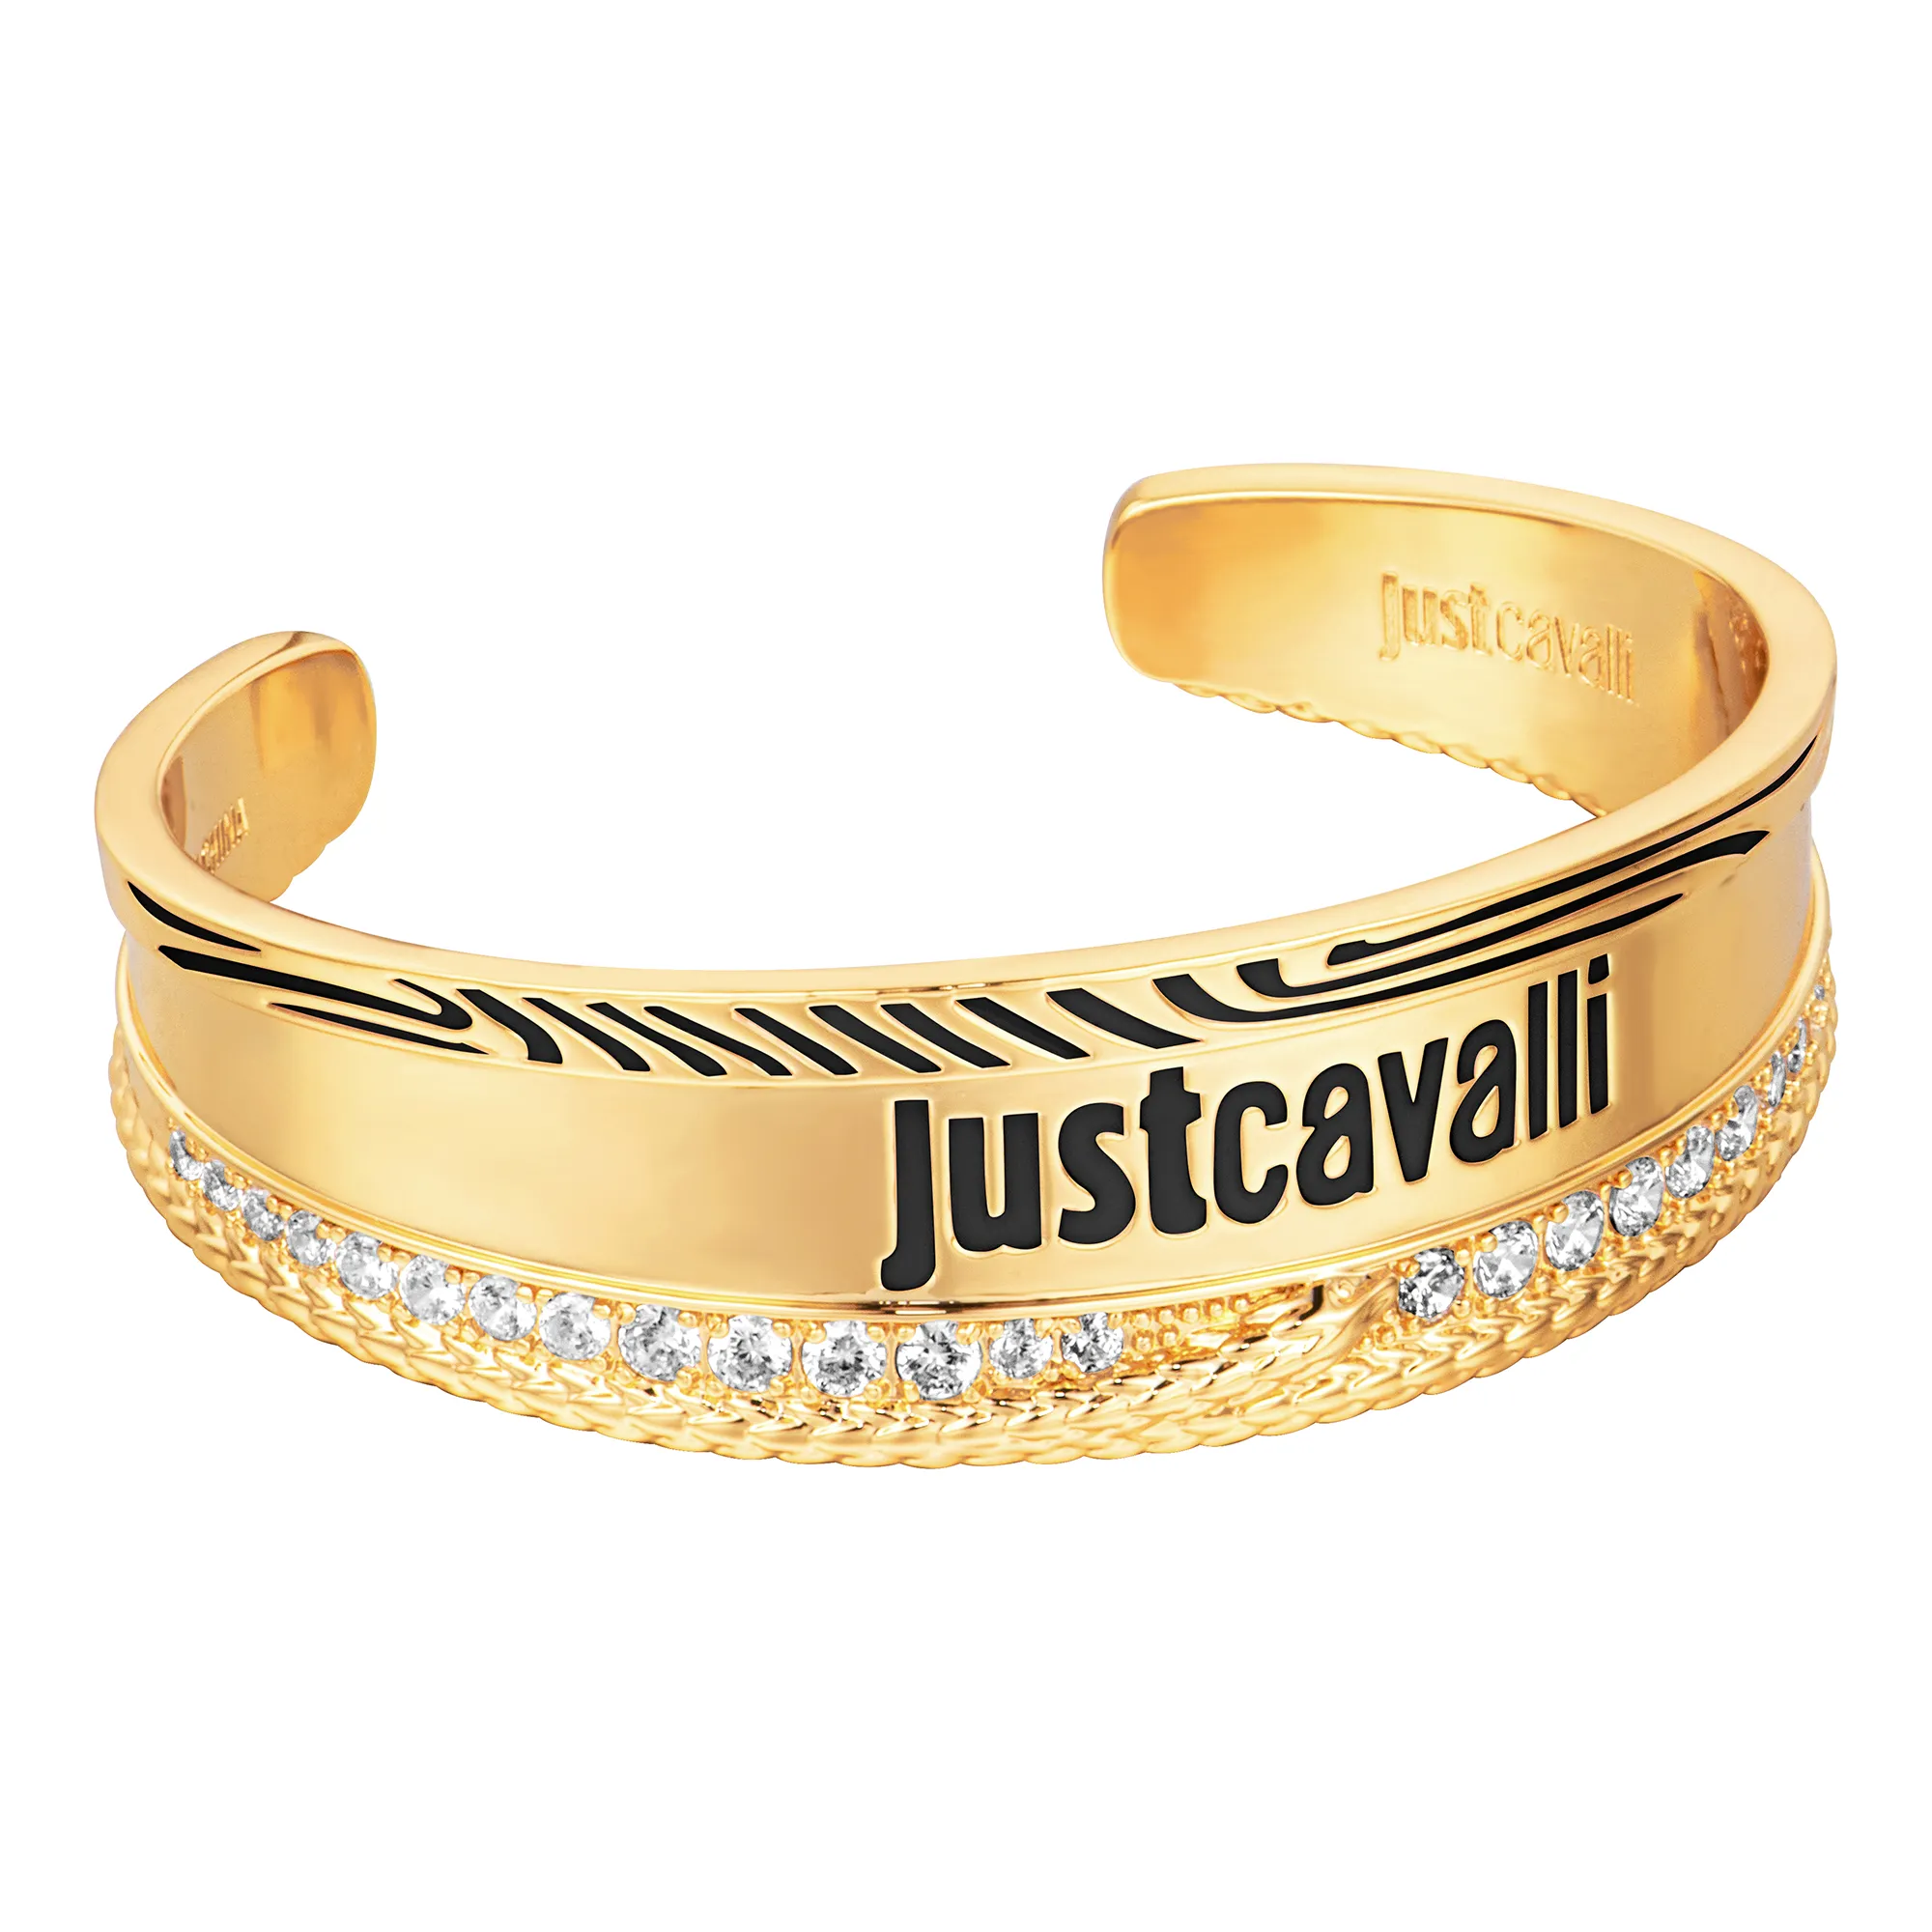 Uhr Just Cavalli Jewels jcfb00893200